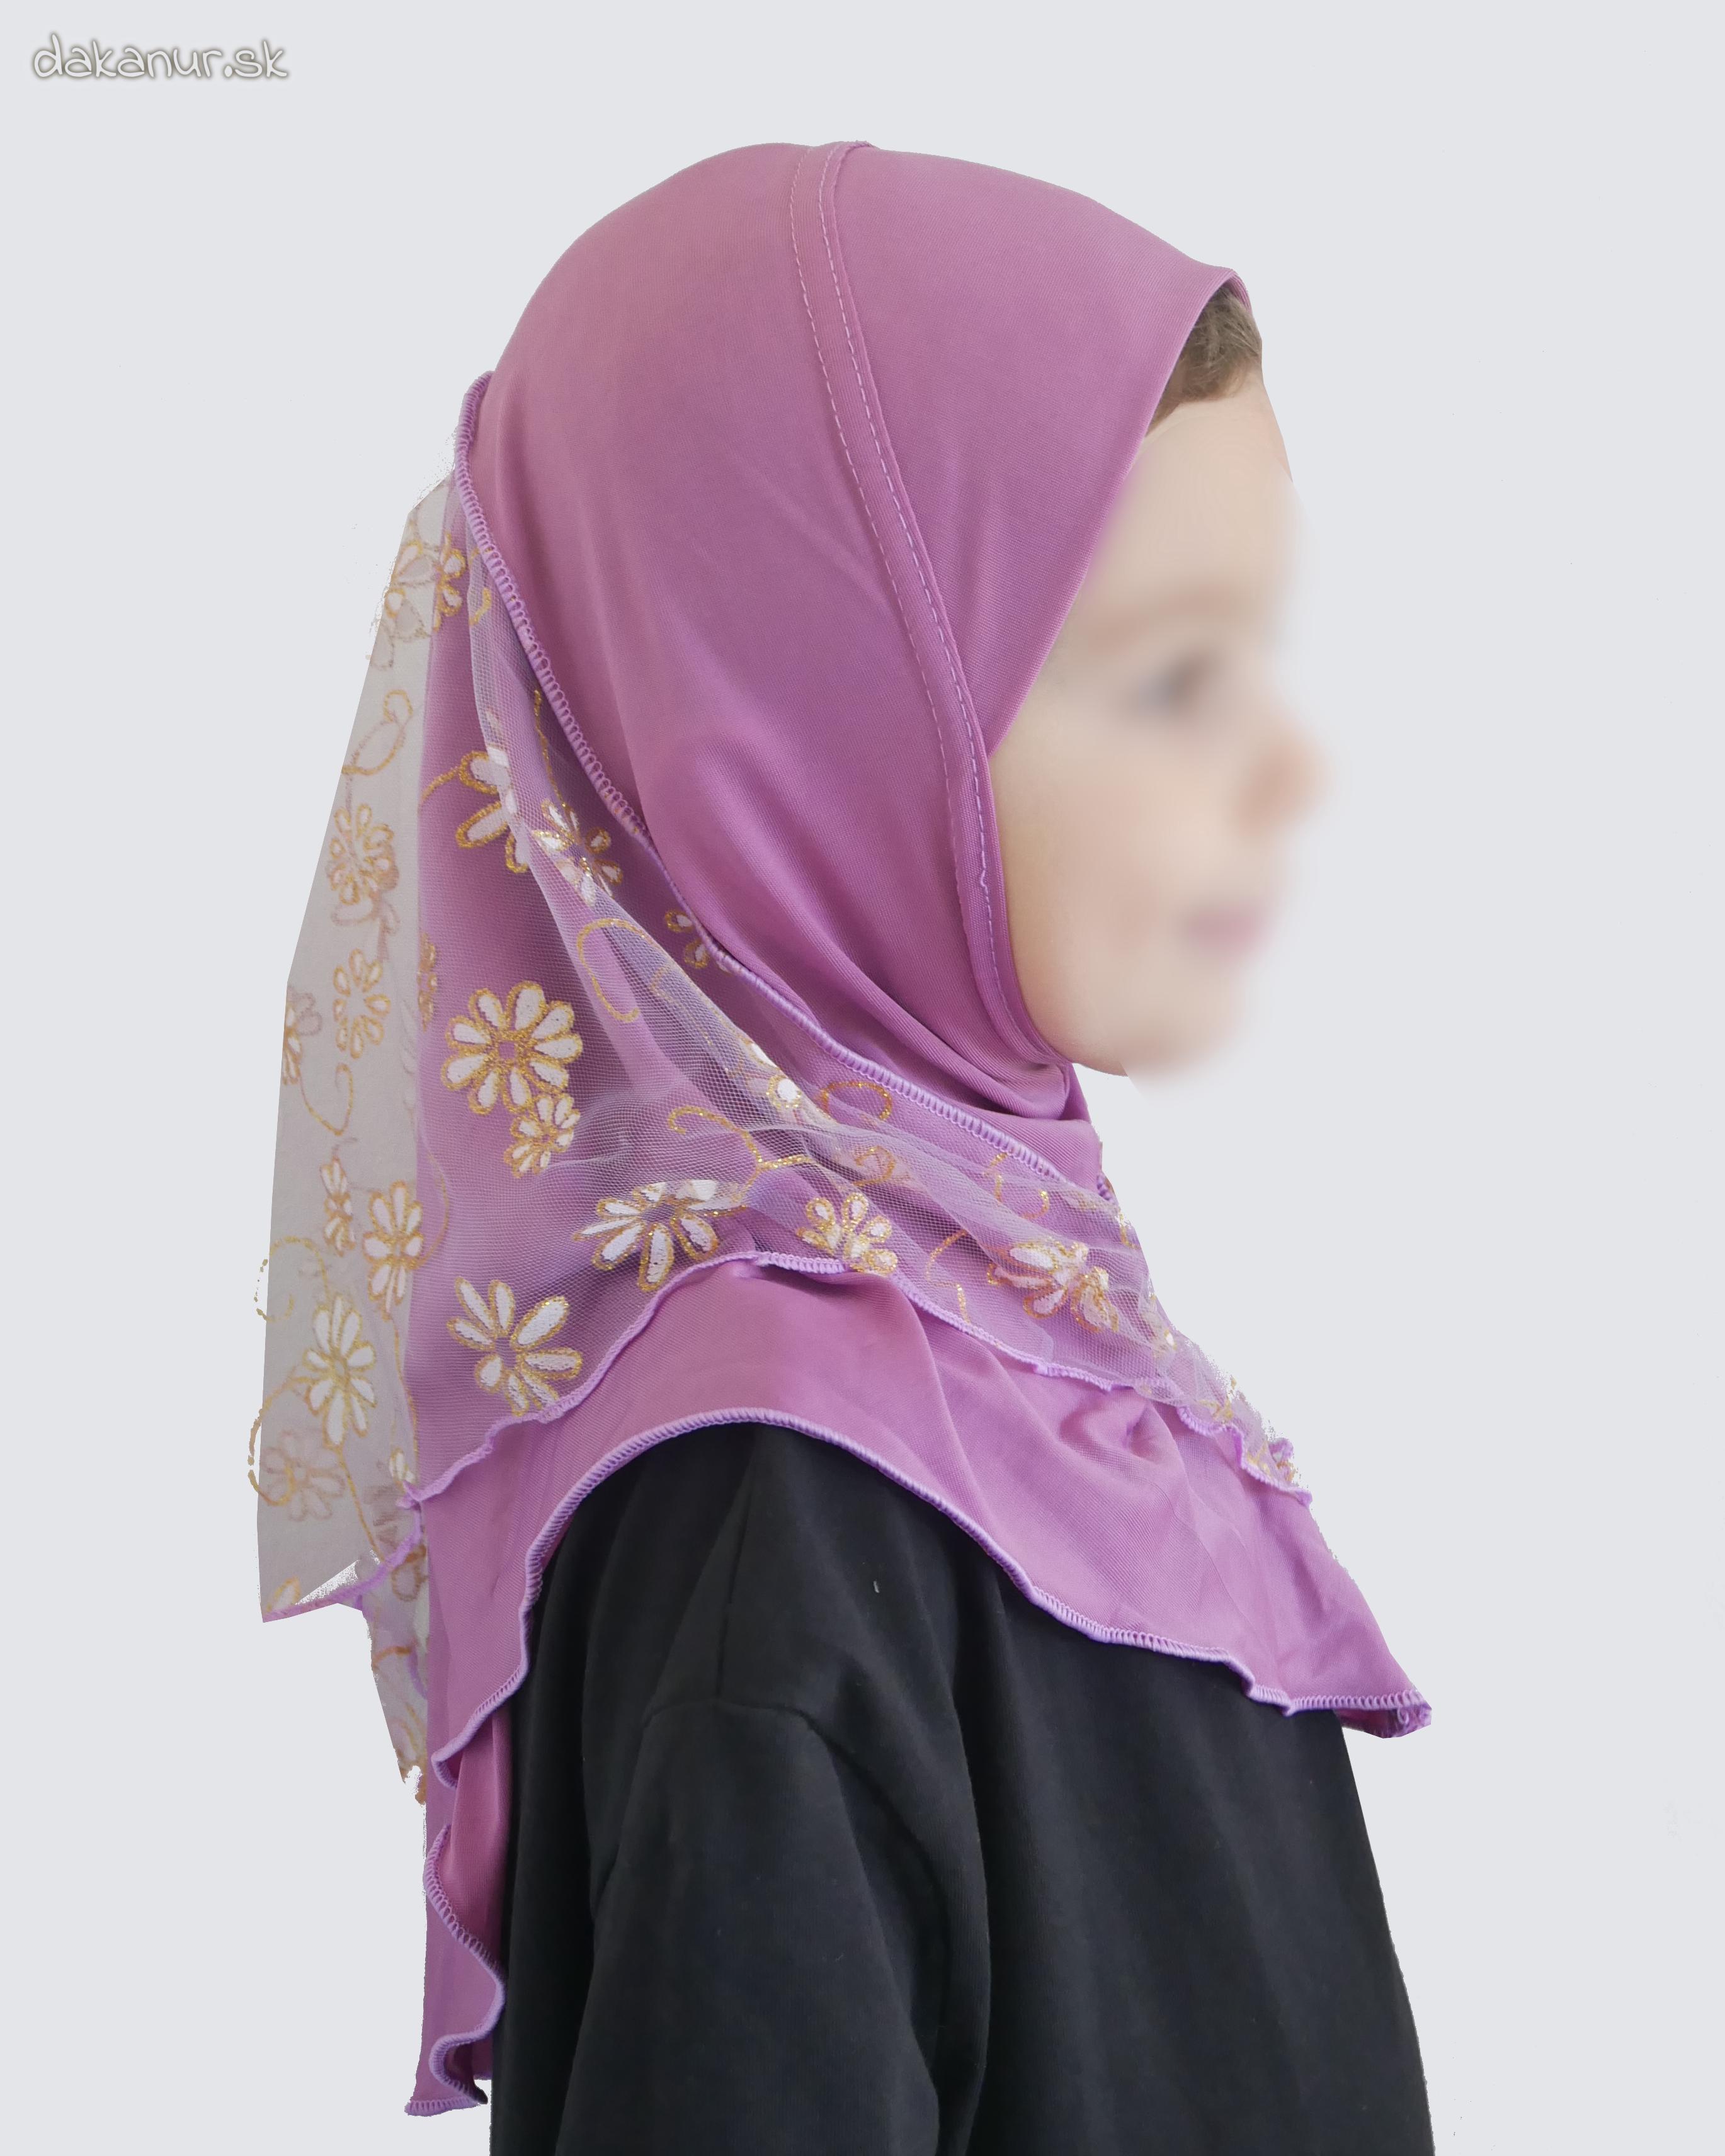 Detský fialový hijáb s kvietkovanou potlačou